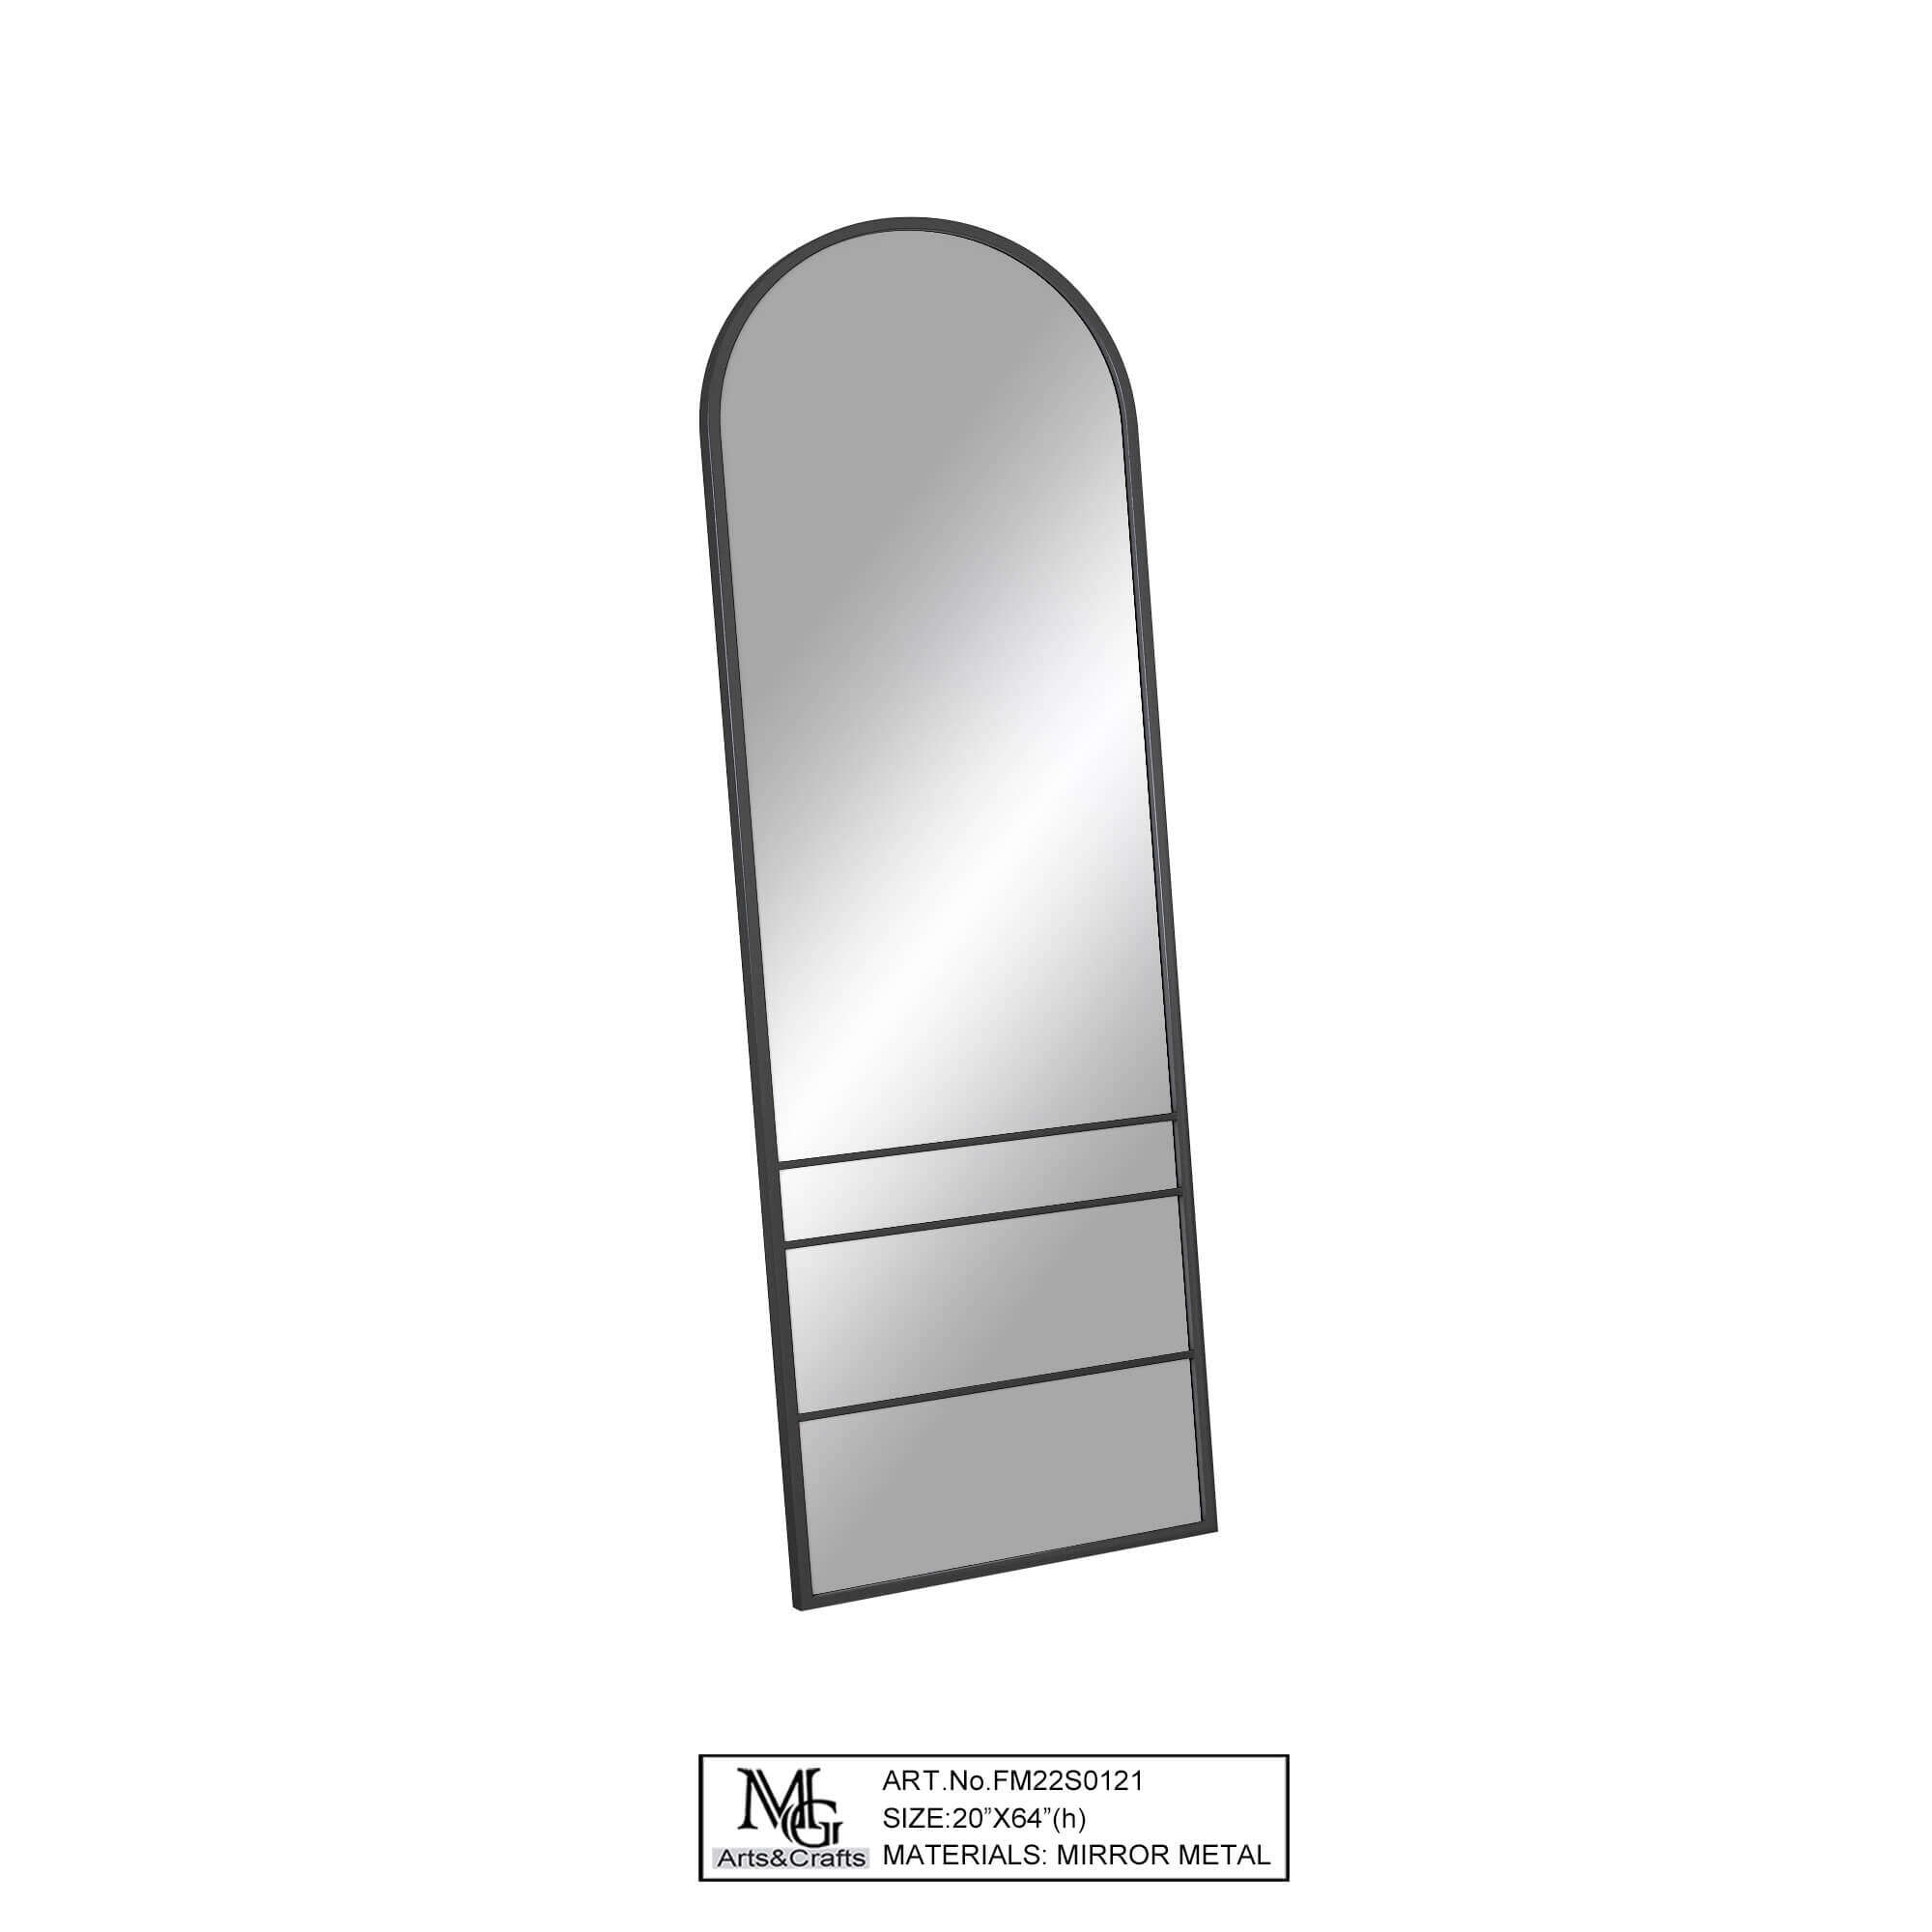 full length mirror deals, wholesale full length mirrors, full length mirror supplier, custom full length mirrors, full length wall mirror factories